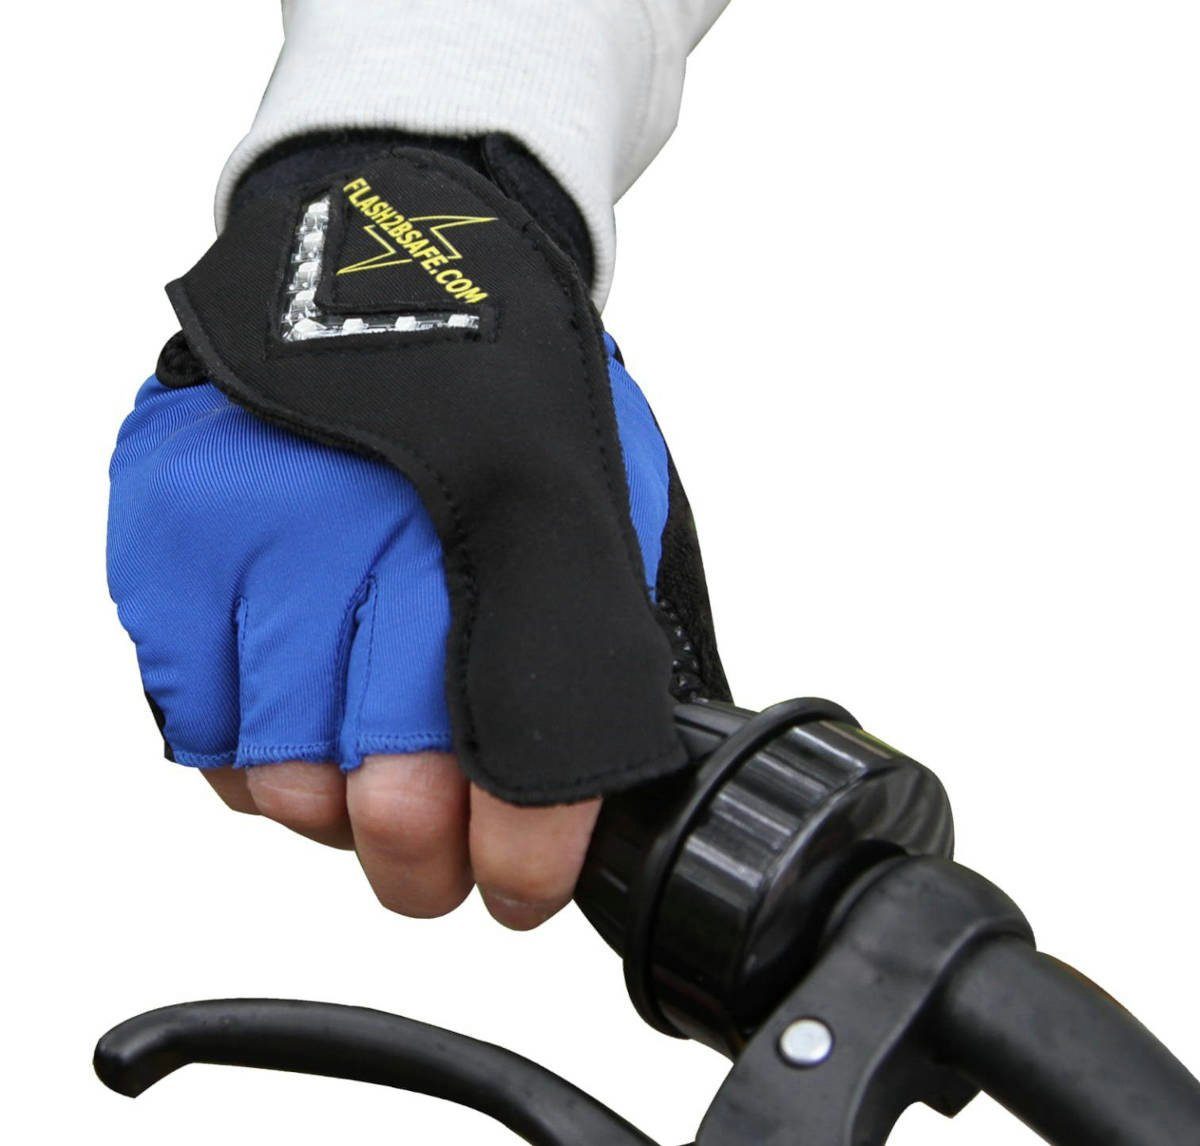 Der Fahrradhandschuhe Hand-Blinker fürs flash2besafe Fahrrad Flash2besafe Original